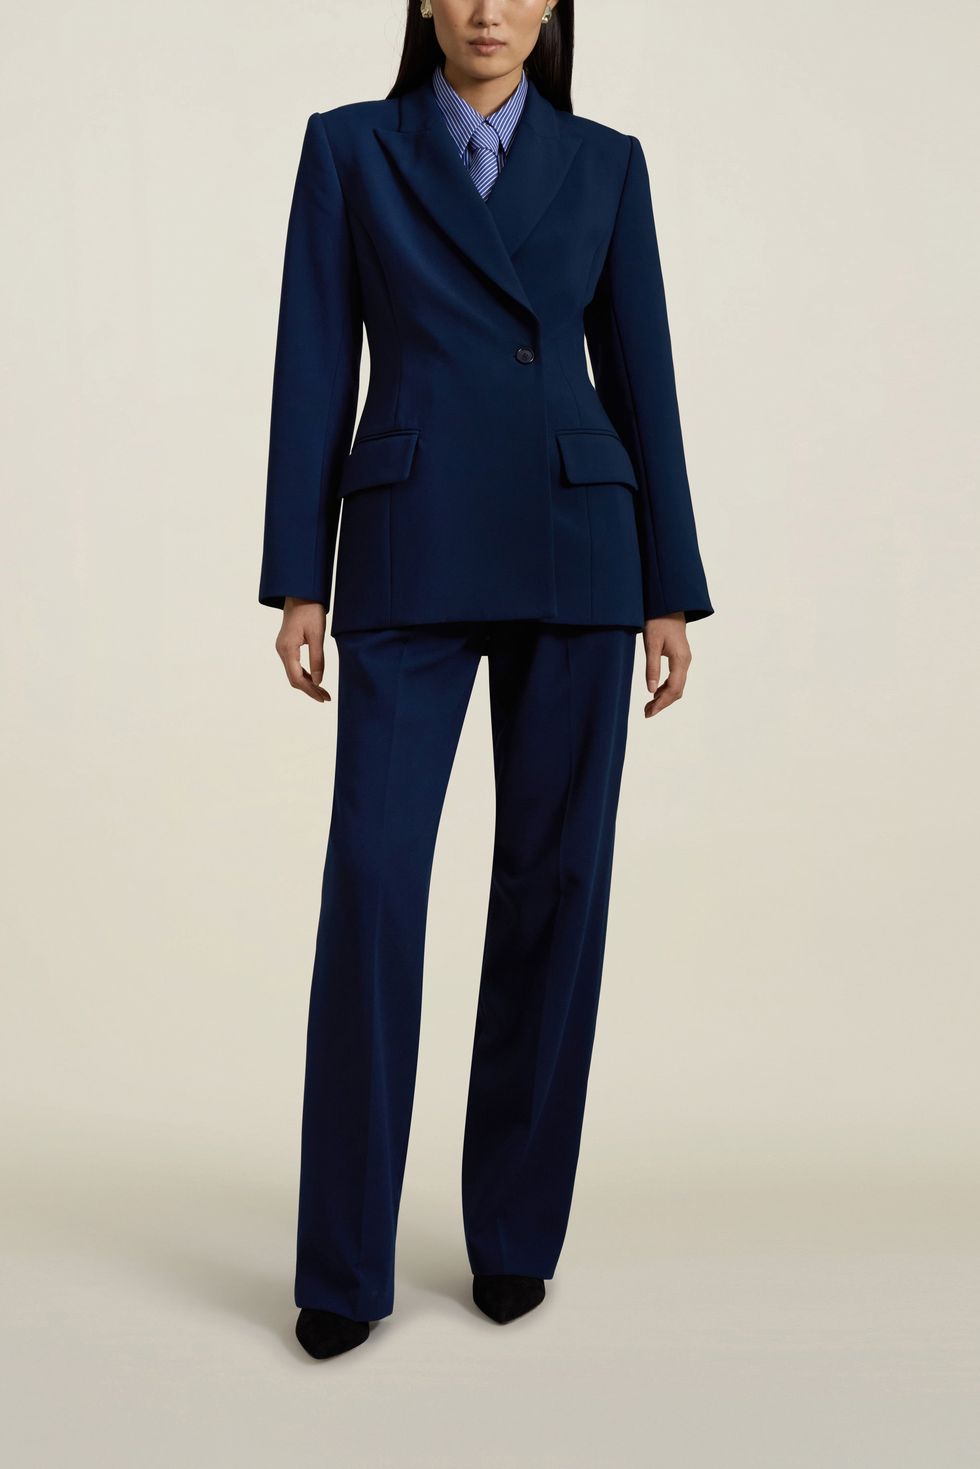 Light Blue Womens Blazer Suit, 3-piece Womens Pantsuit Set, Blue Blazer  Trouser Suit for Women, Blazer Suit Set for Ladies 